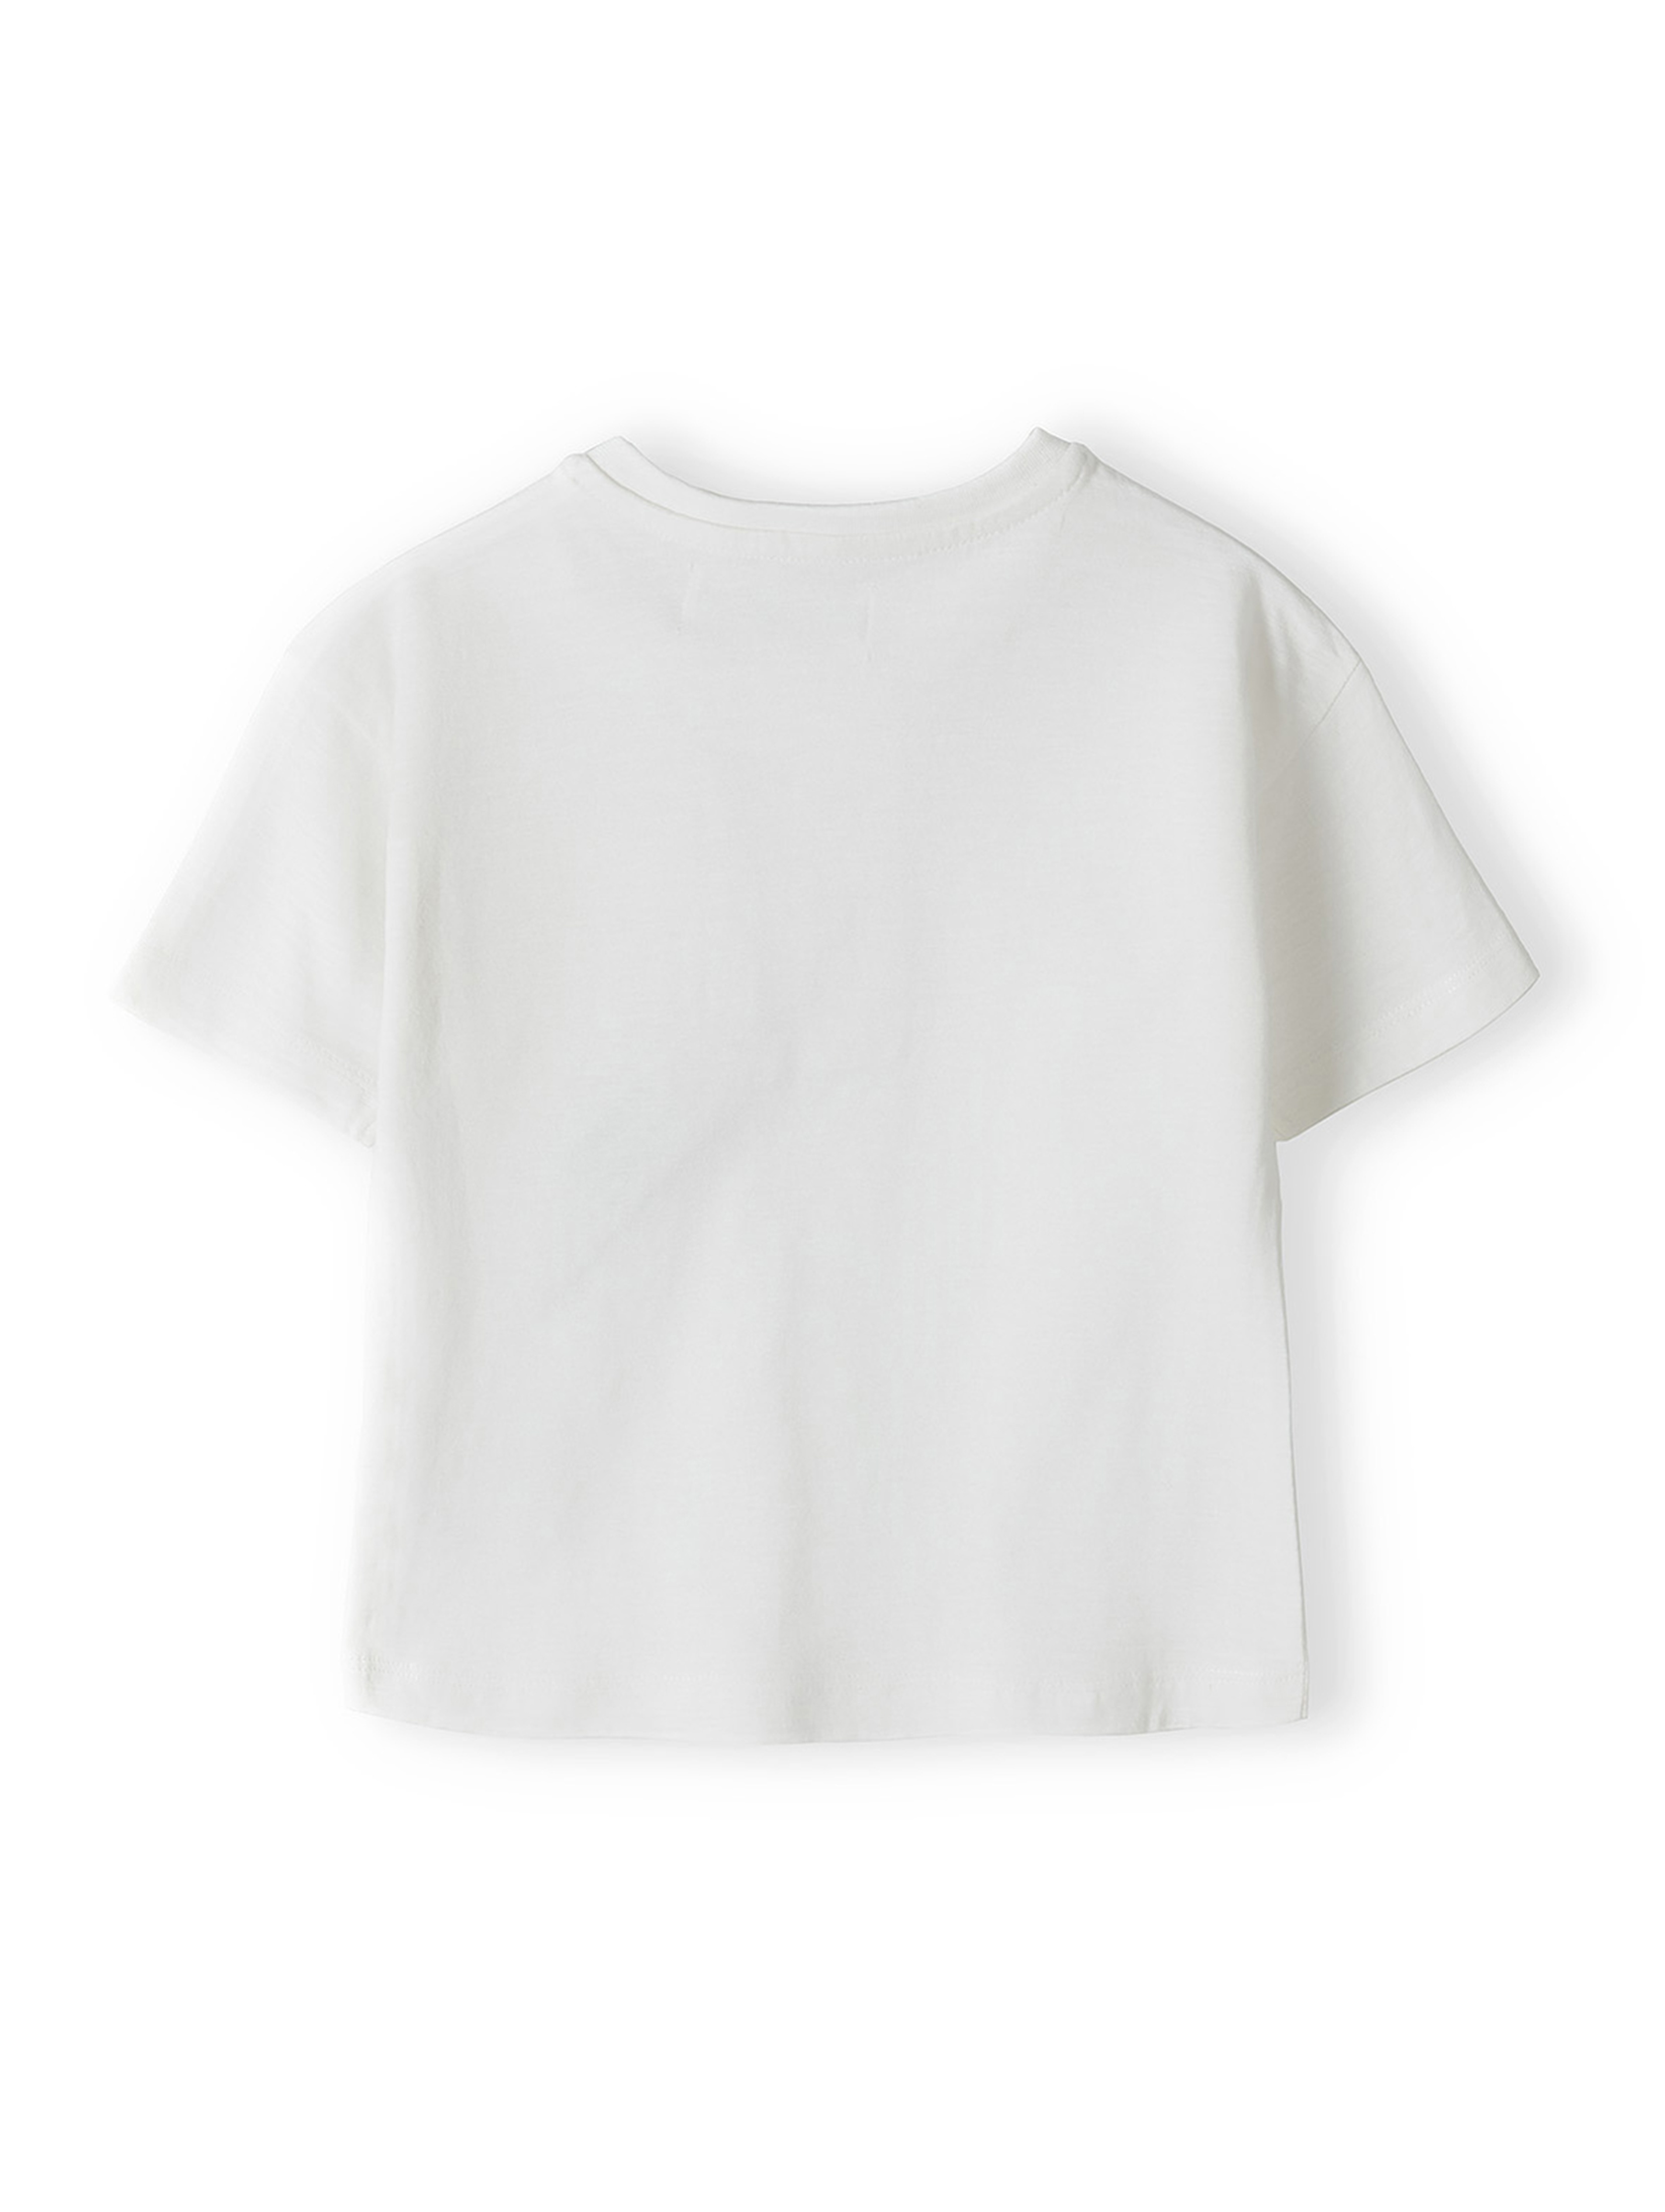 Komplet niemowlęcy- biały t-shirt z bawełny + spodnie dresowe